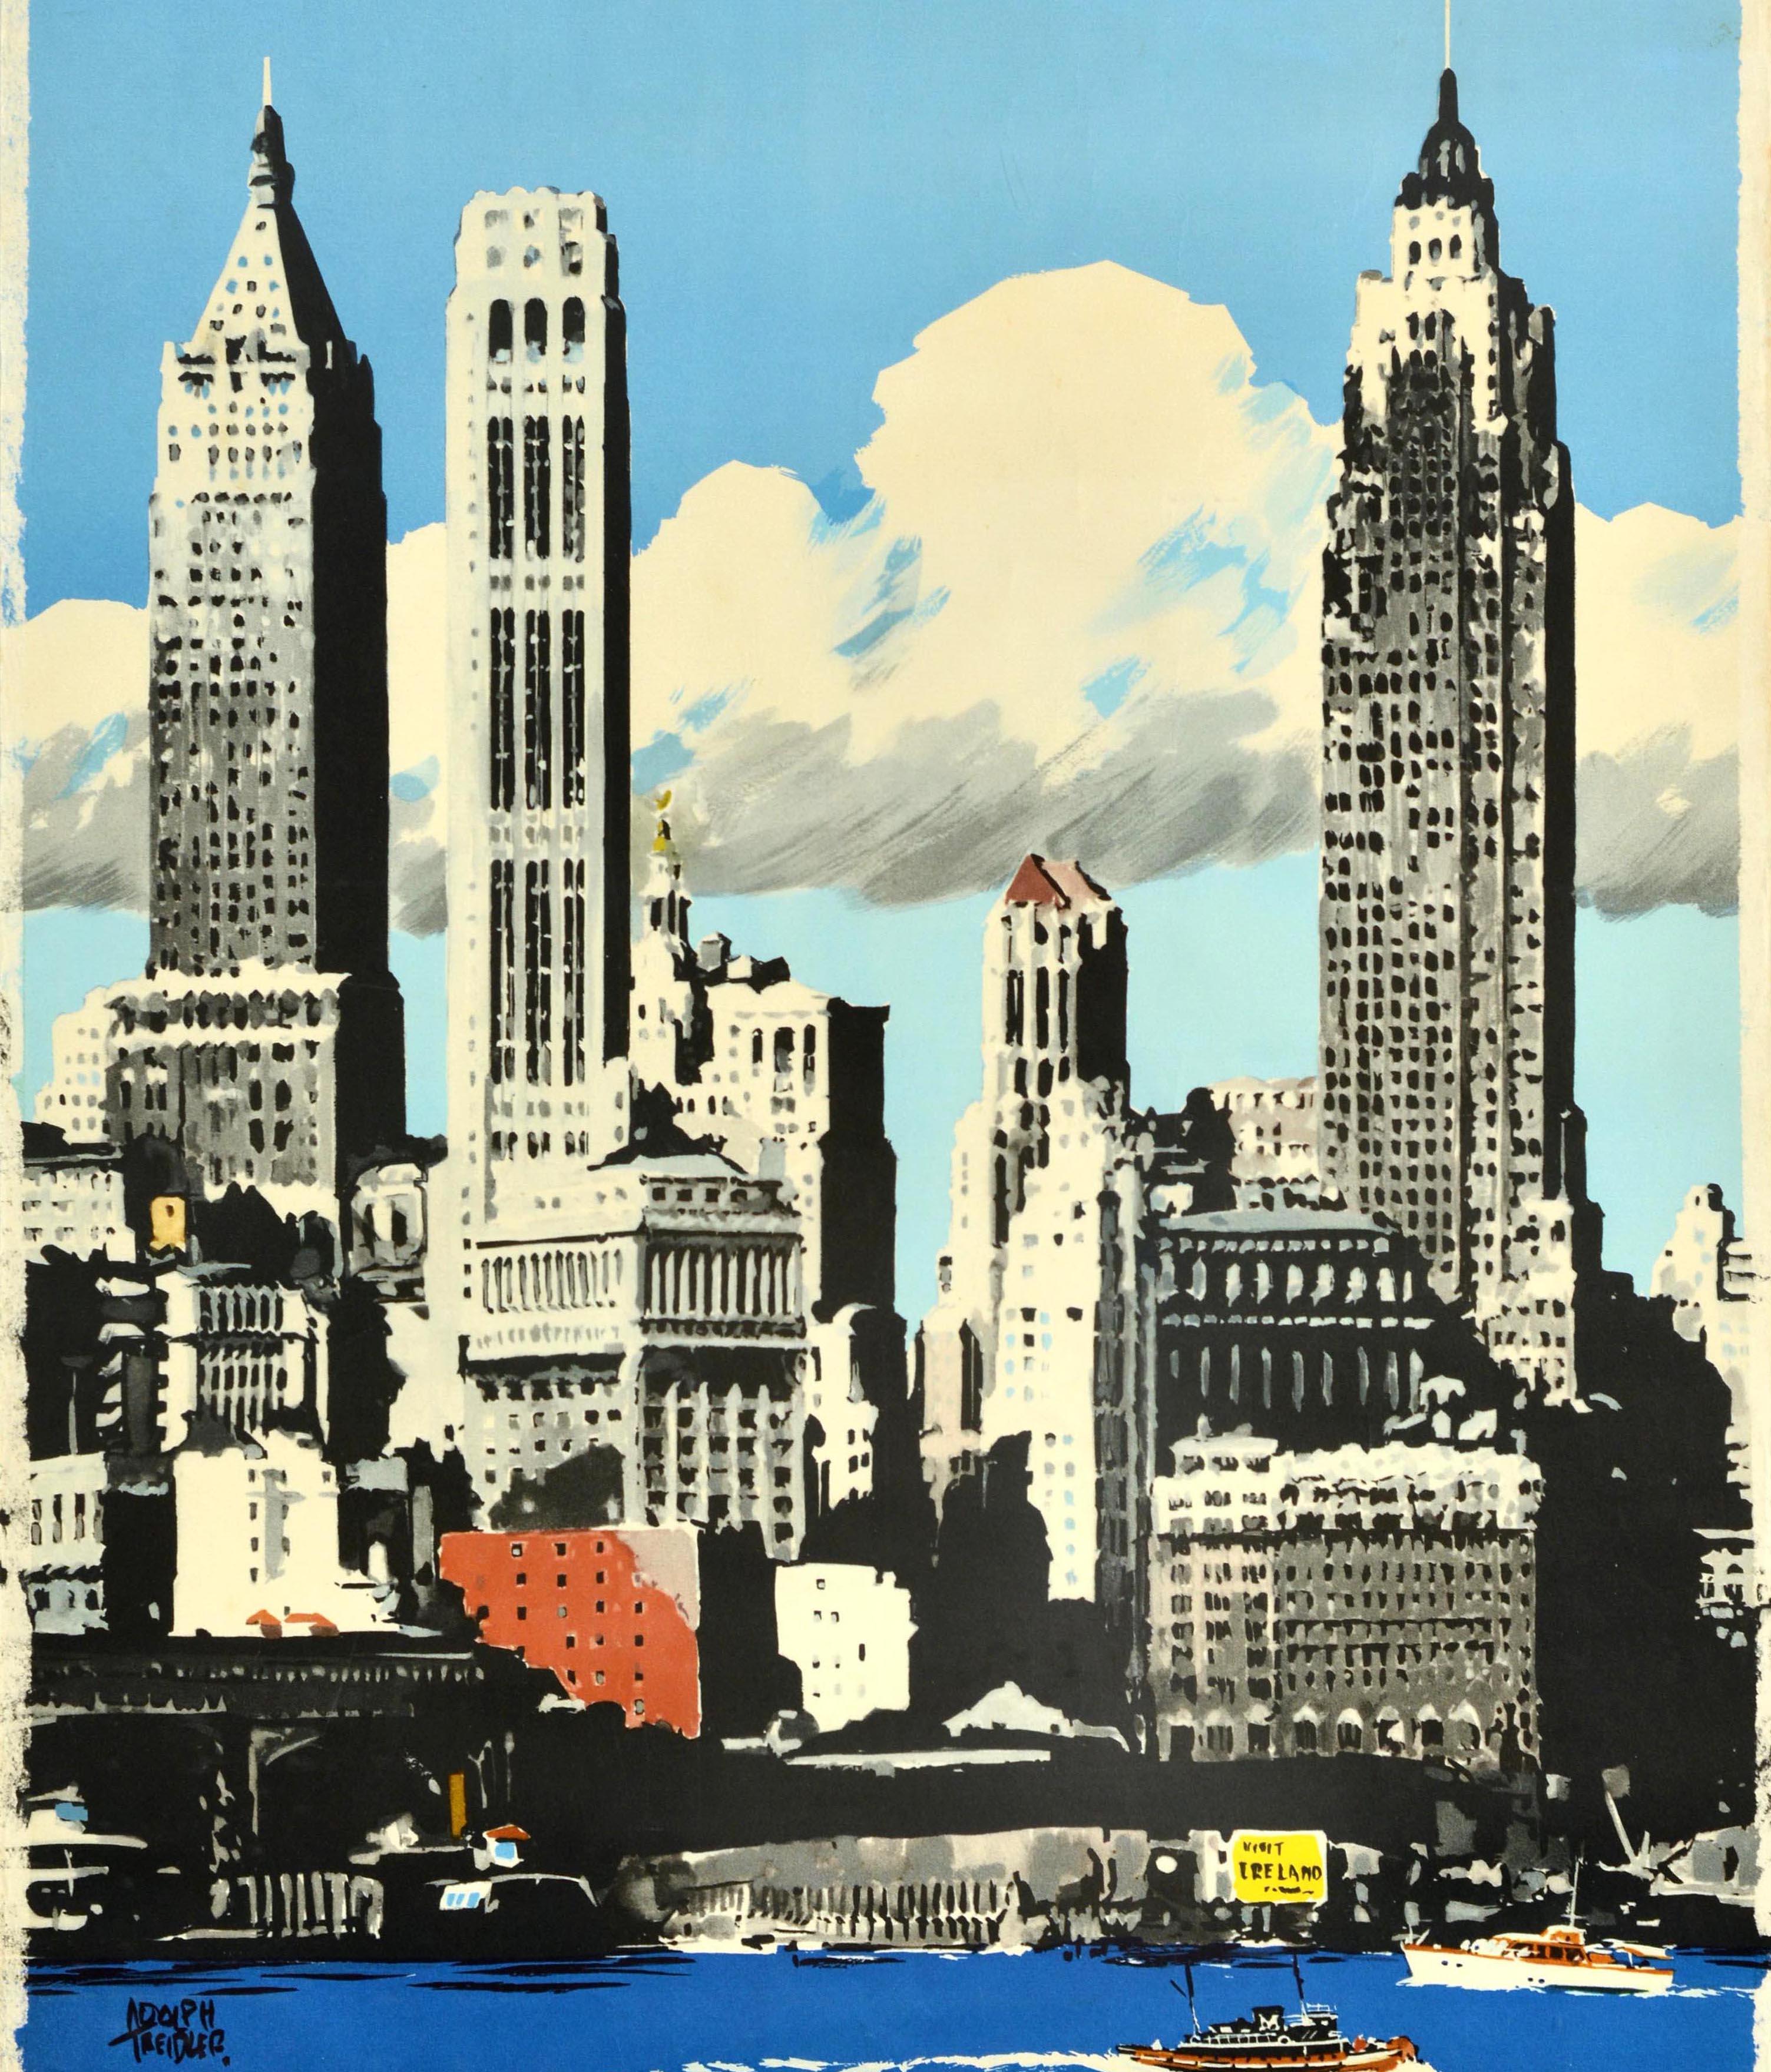 Original-Reise-Werbeplakat für die USA von Aer Lingus Irish International Airlines mit einer Illustration von New Yorker Wolkenkratzern, die in den blauen Himmel ragen, mit Booten auf dem Wasser und dem Aer Lingus-Kleeblatt-Logo und Text darunter.